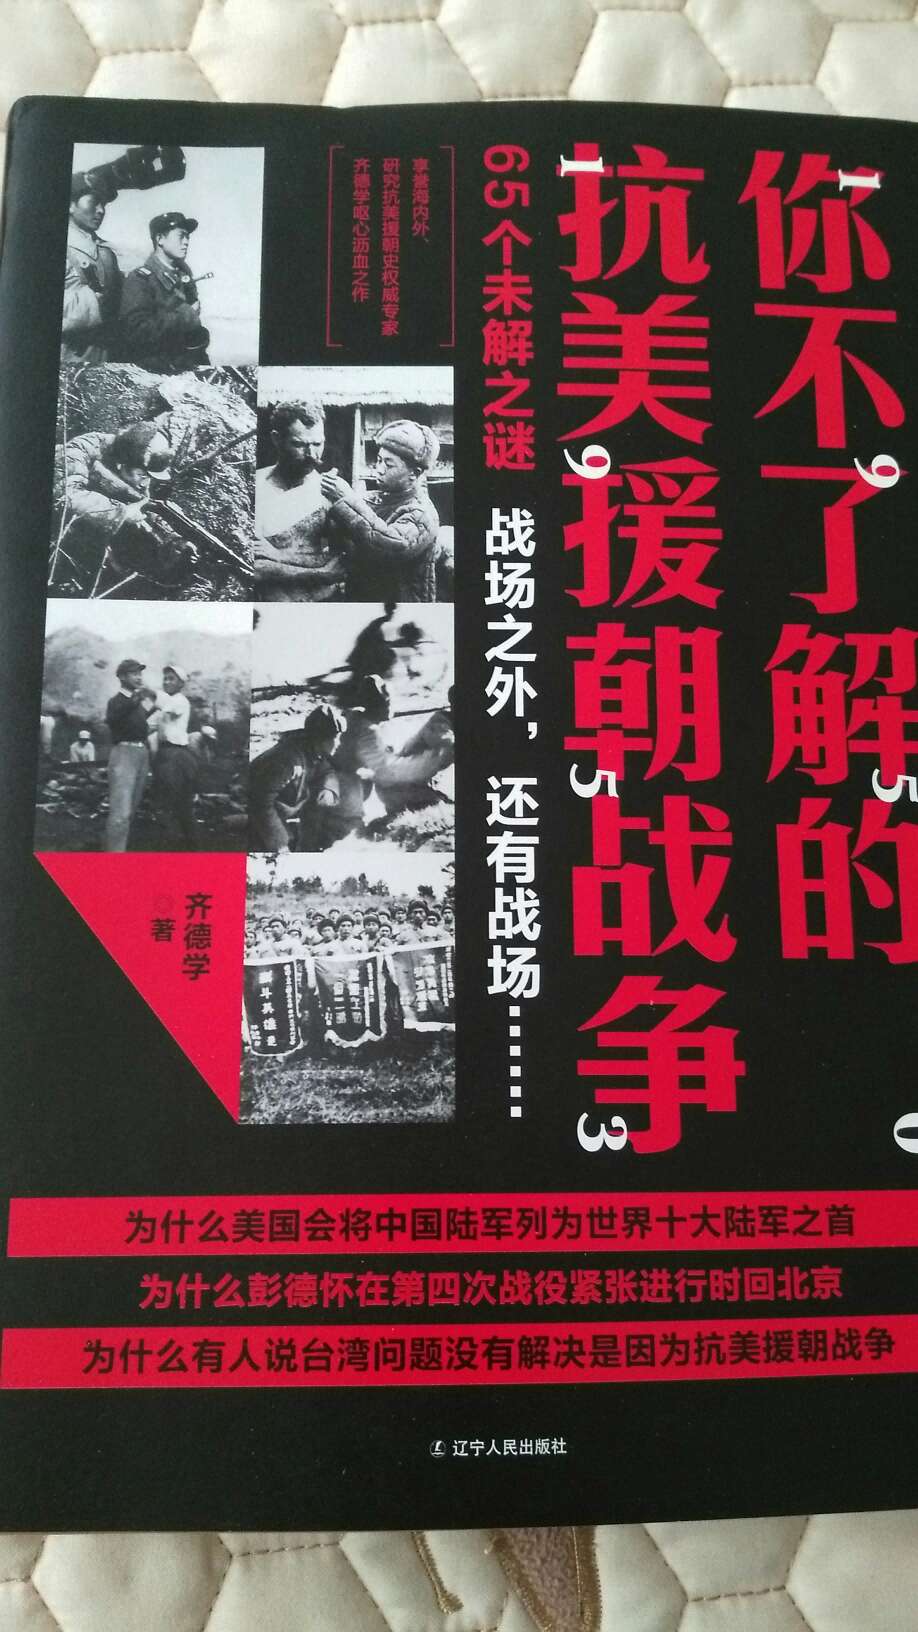 非常值得一读的历史书籍，让我们对朝鲜战争有了更深刻的认识。对了解朝鲜战争的历史状况非常具有借鉴意义！